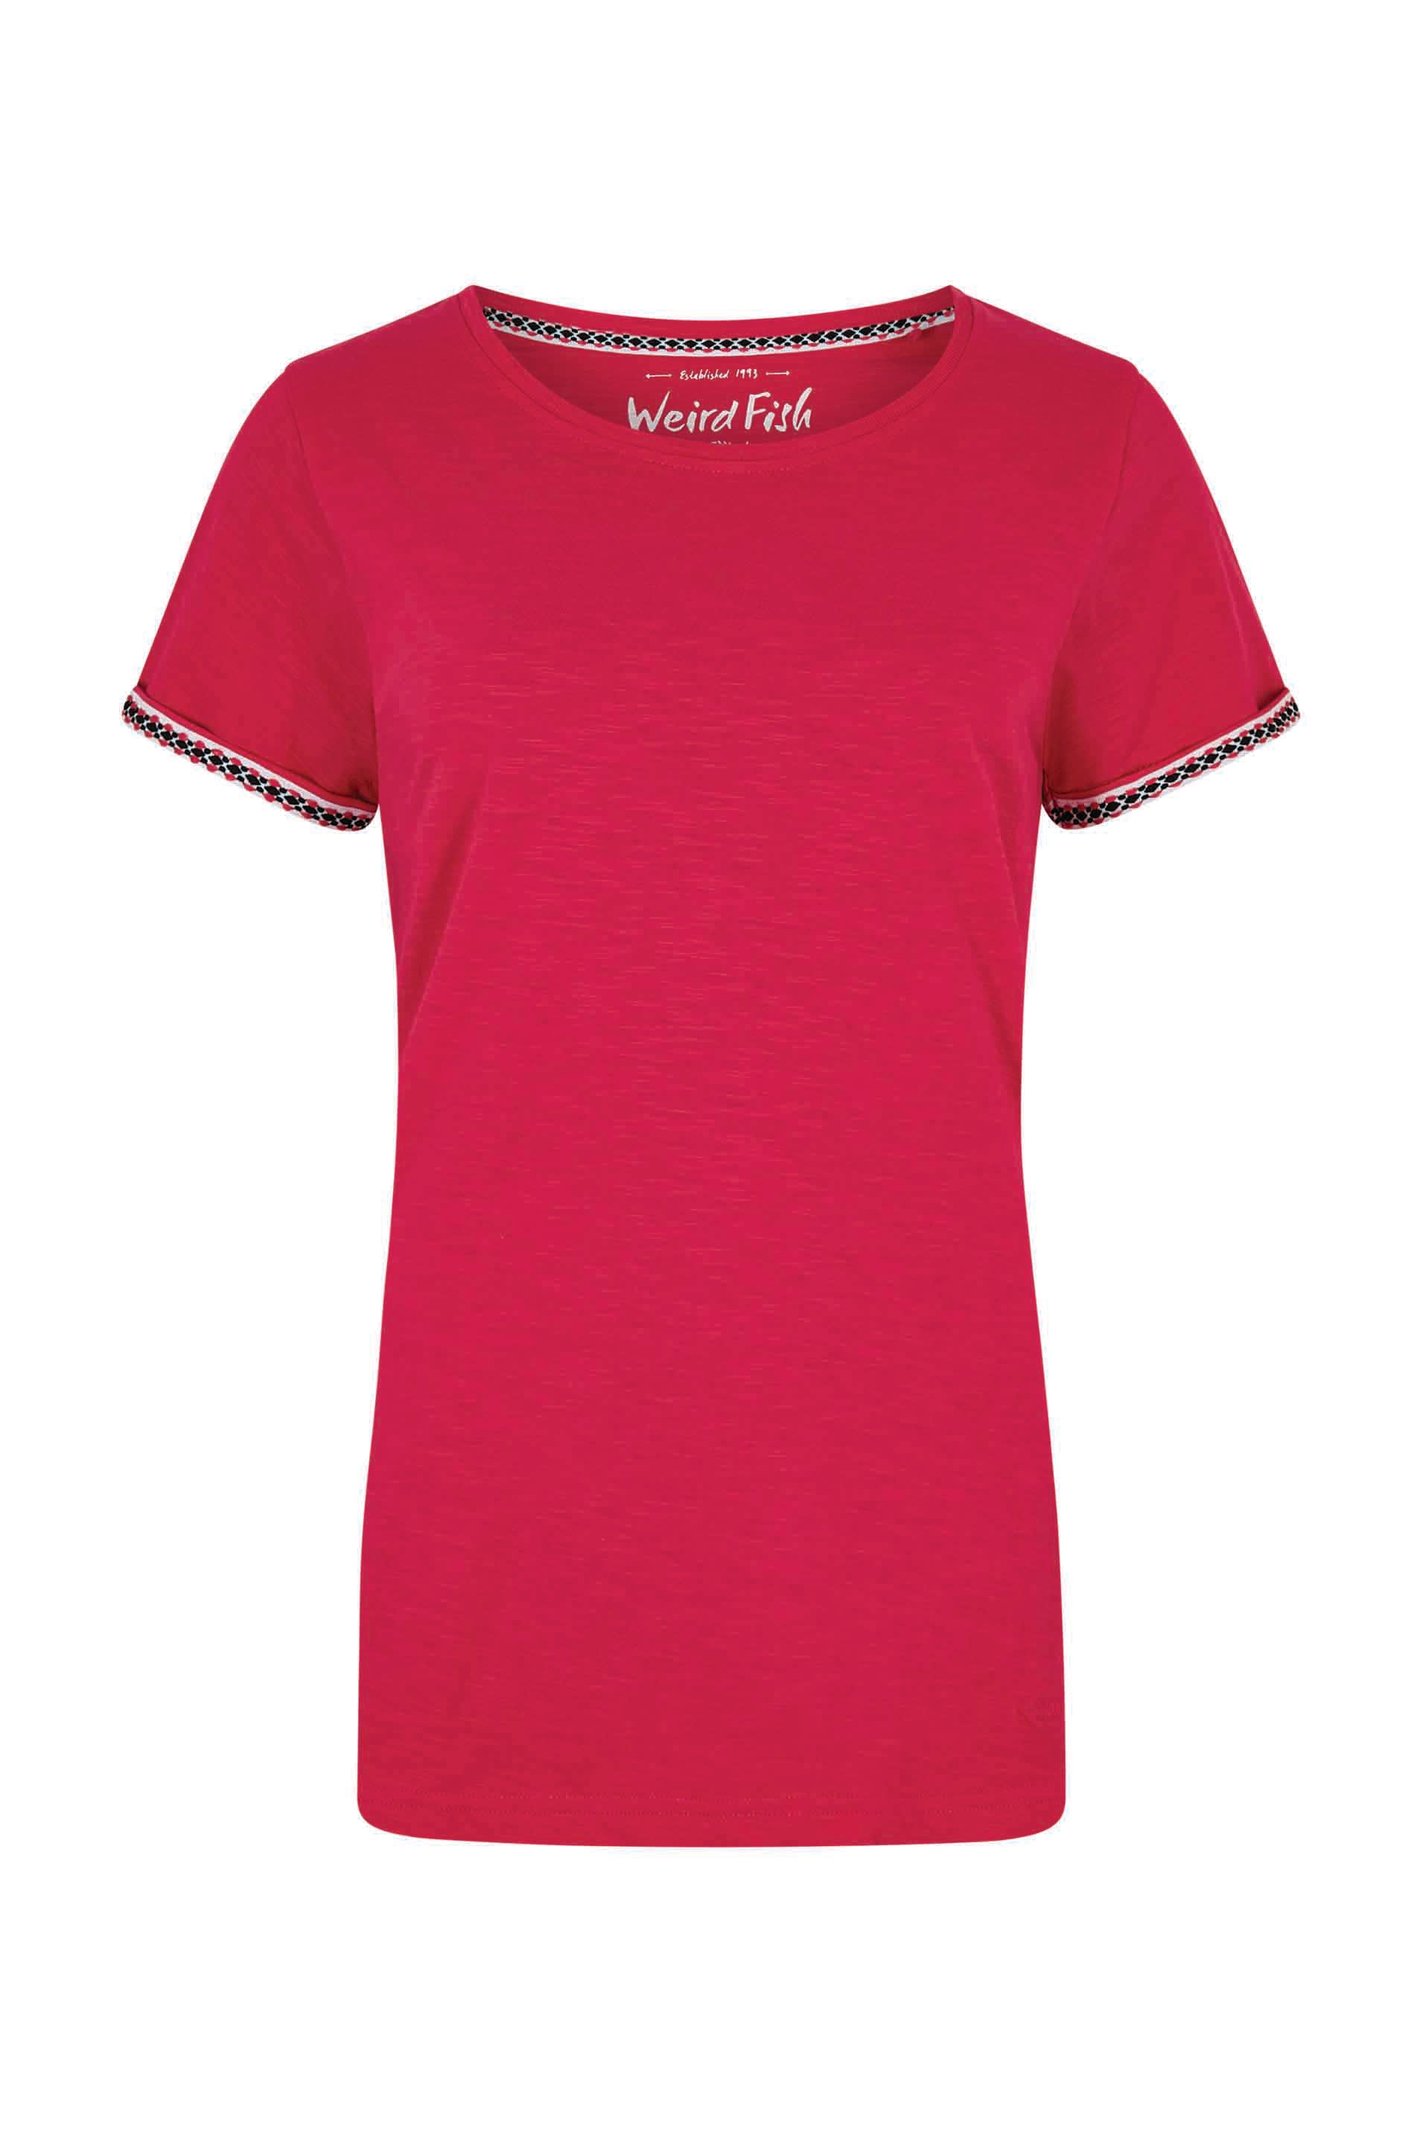 Weird Fish Teya Organic Cotton T-Shirt Hot Pink Size 16